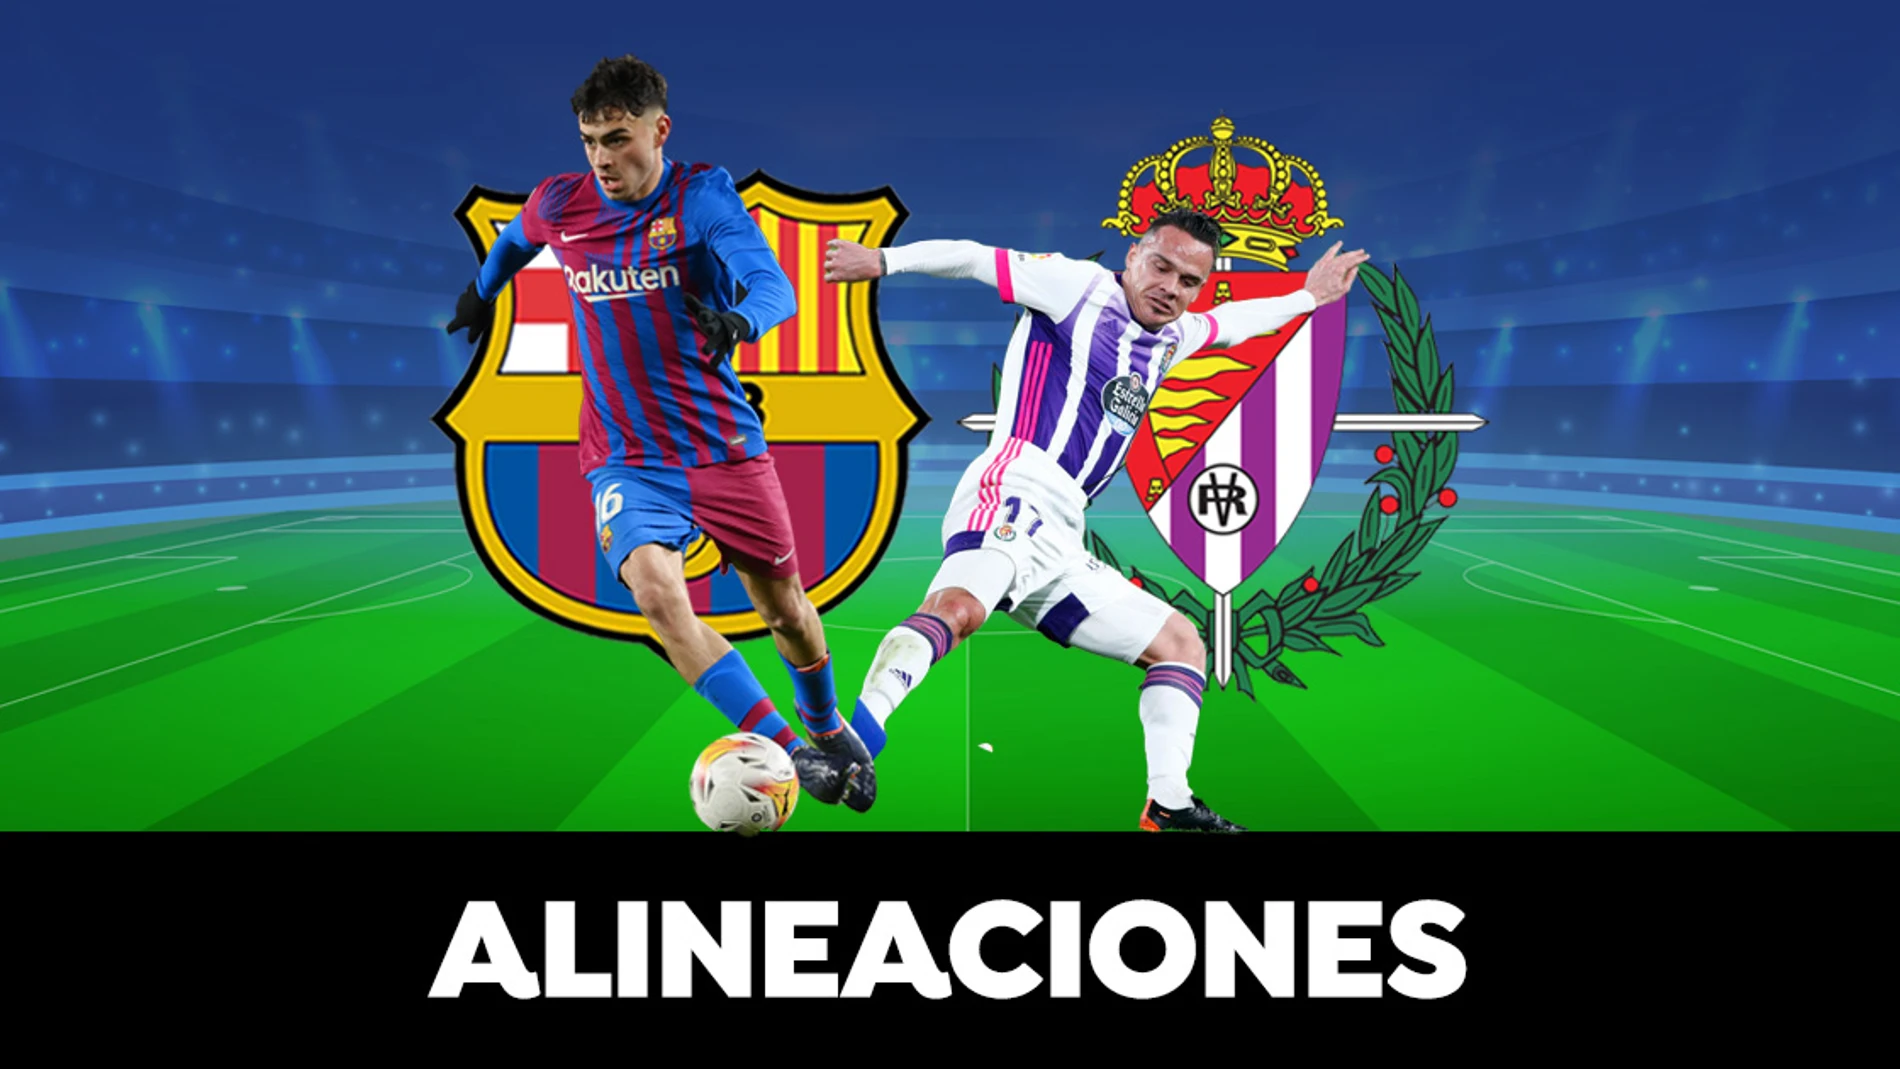 Alineación OFICIAL del Barcelona el partido de hoy contra el Valladolid en La Liga